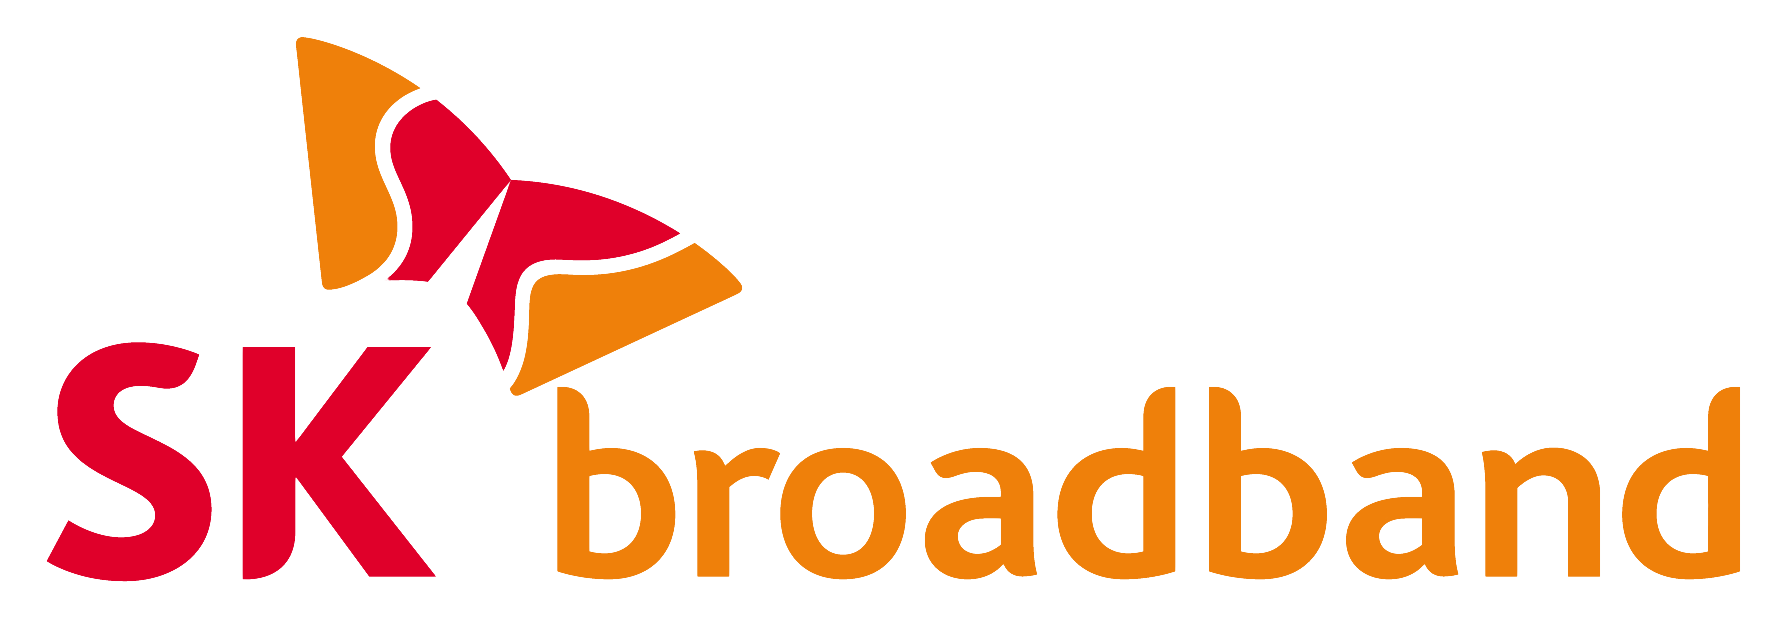 SK broadband logo